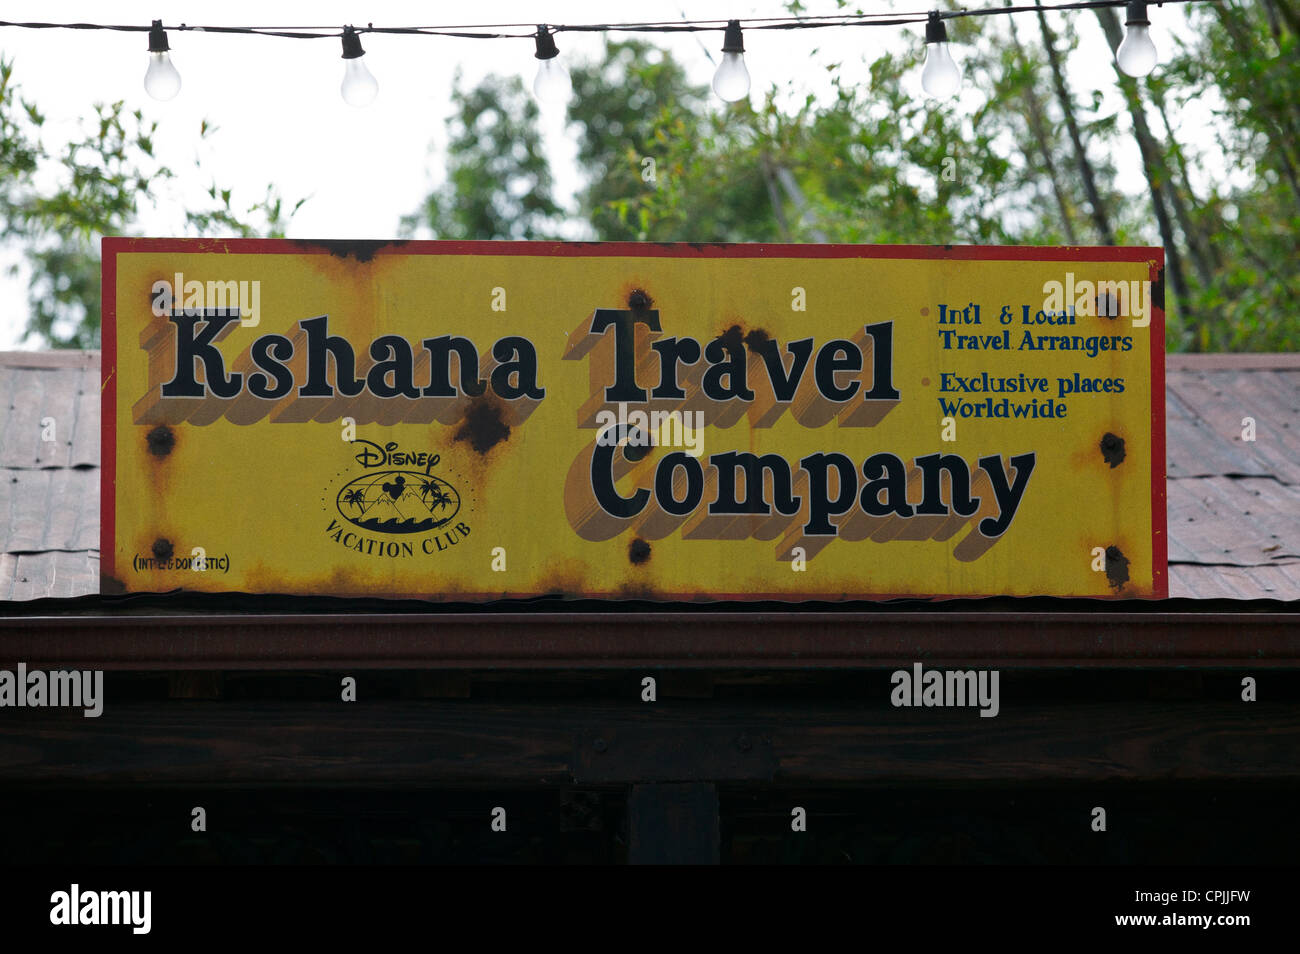 Kshana società di viaggi per firmare al Regno degli Animali di Disney Resort,Orlando, Florida, Stati Uniti d'America. Questo appartiene alla Disney Vacation Club. Foto Stock